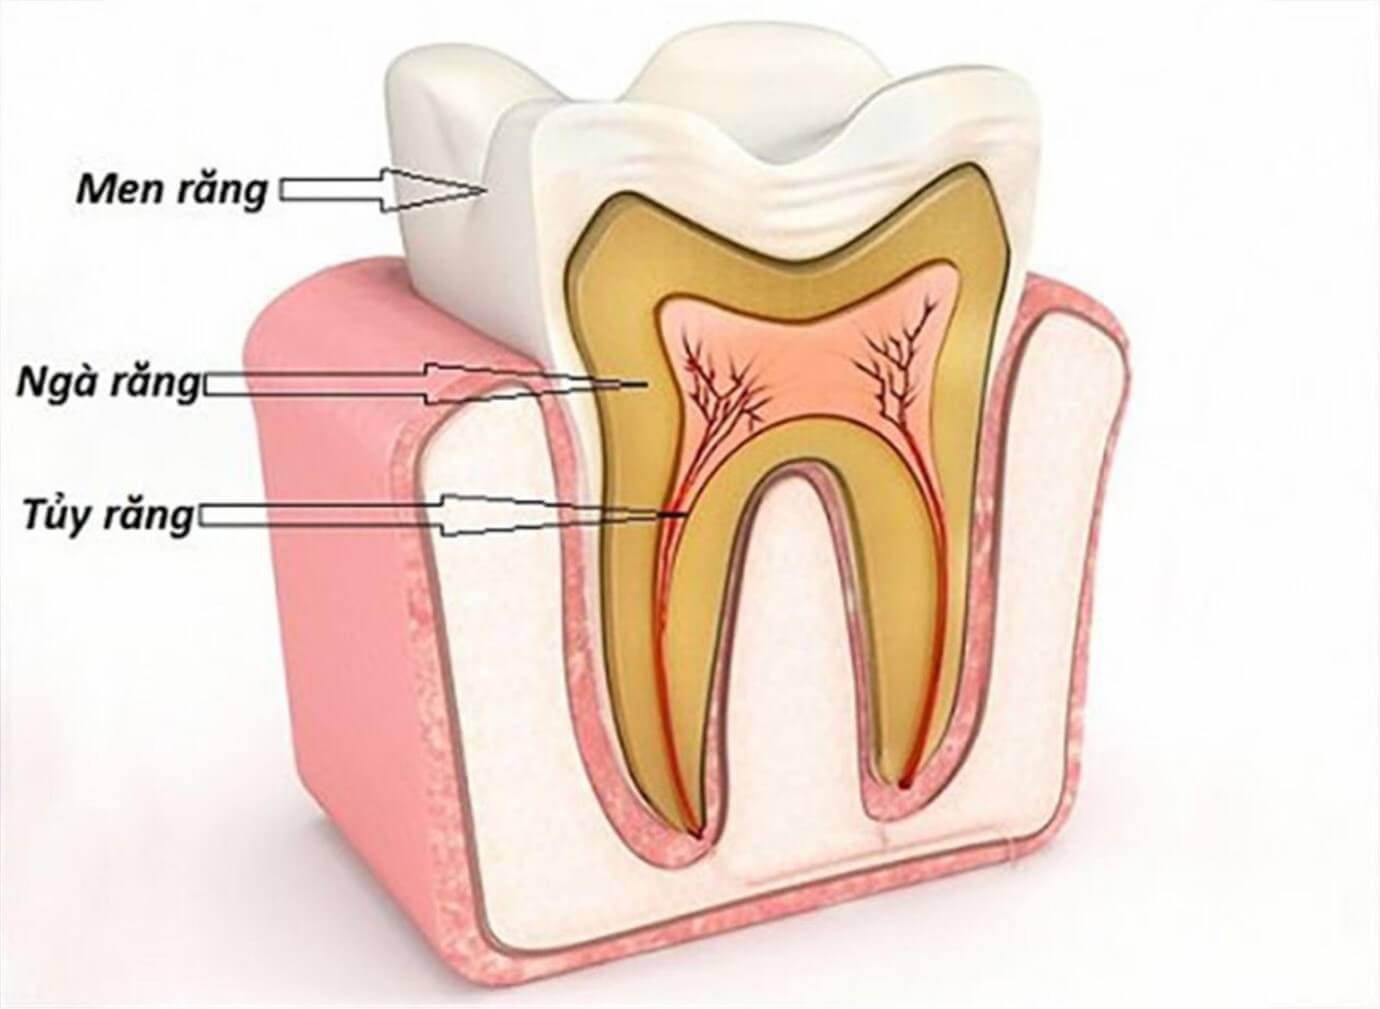 Tủy răng là một môi trường vô khuẩn